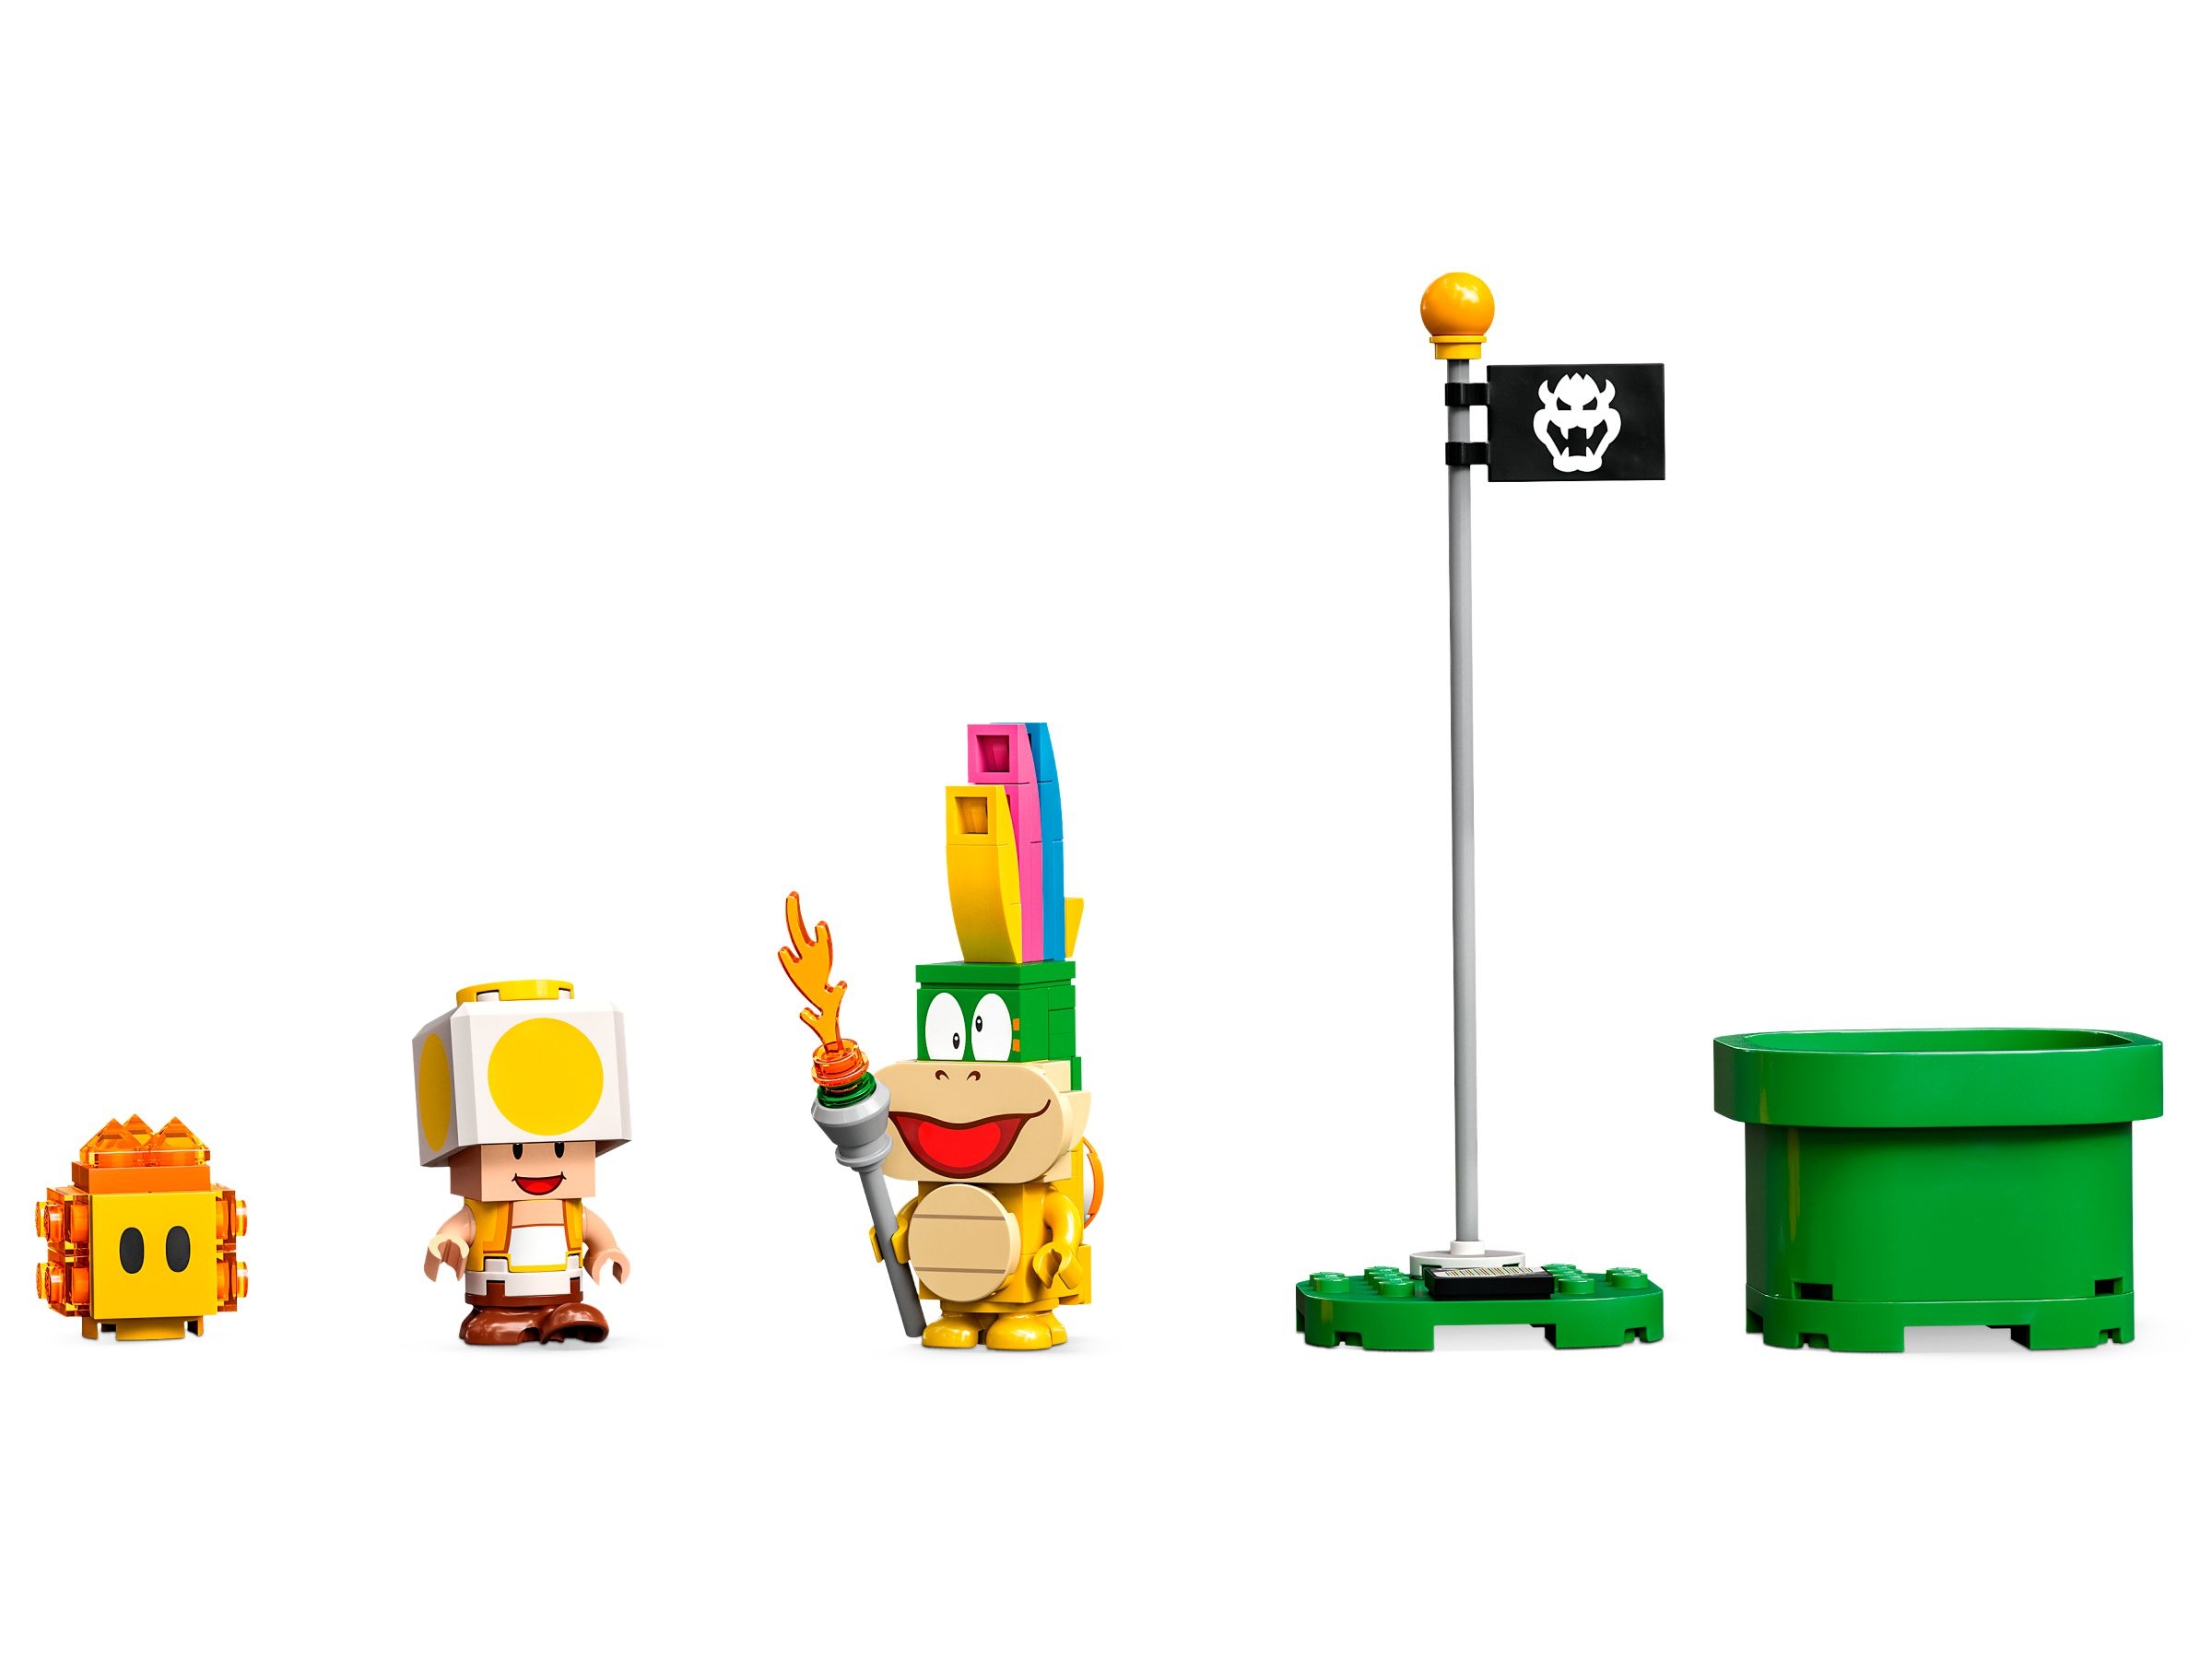 LEGO Super Mario - Przygody z Peach - zestaw startowy (71403)